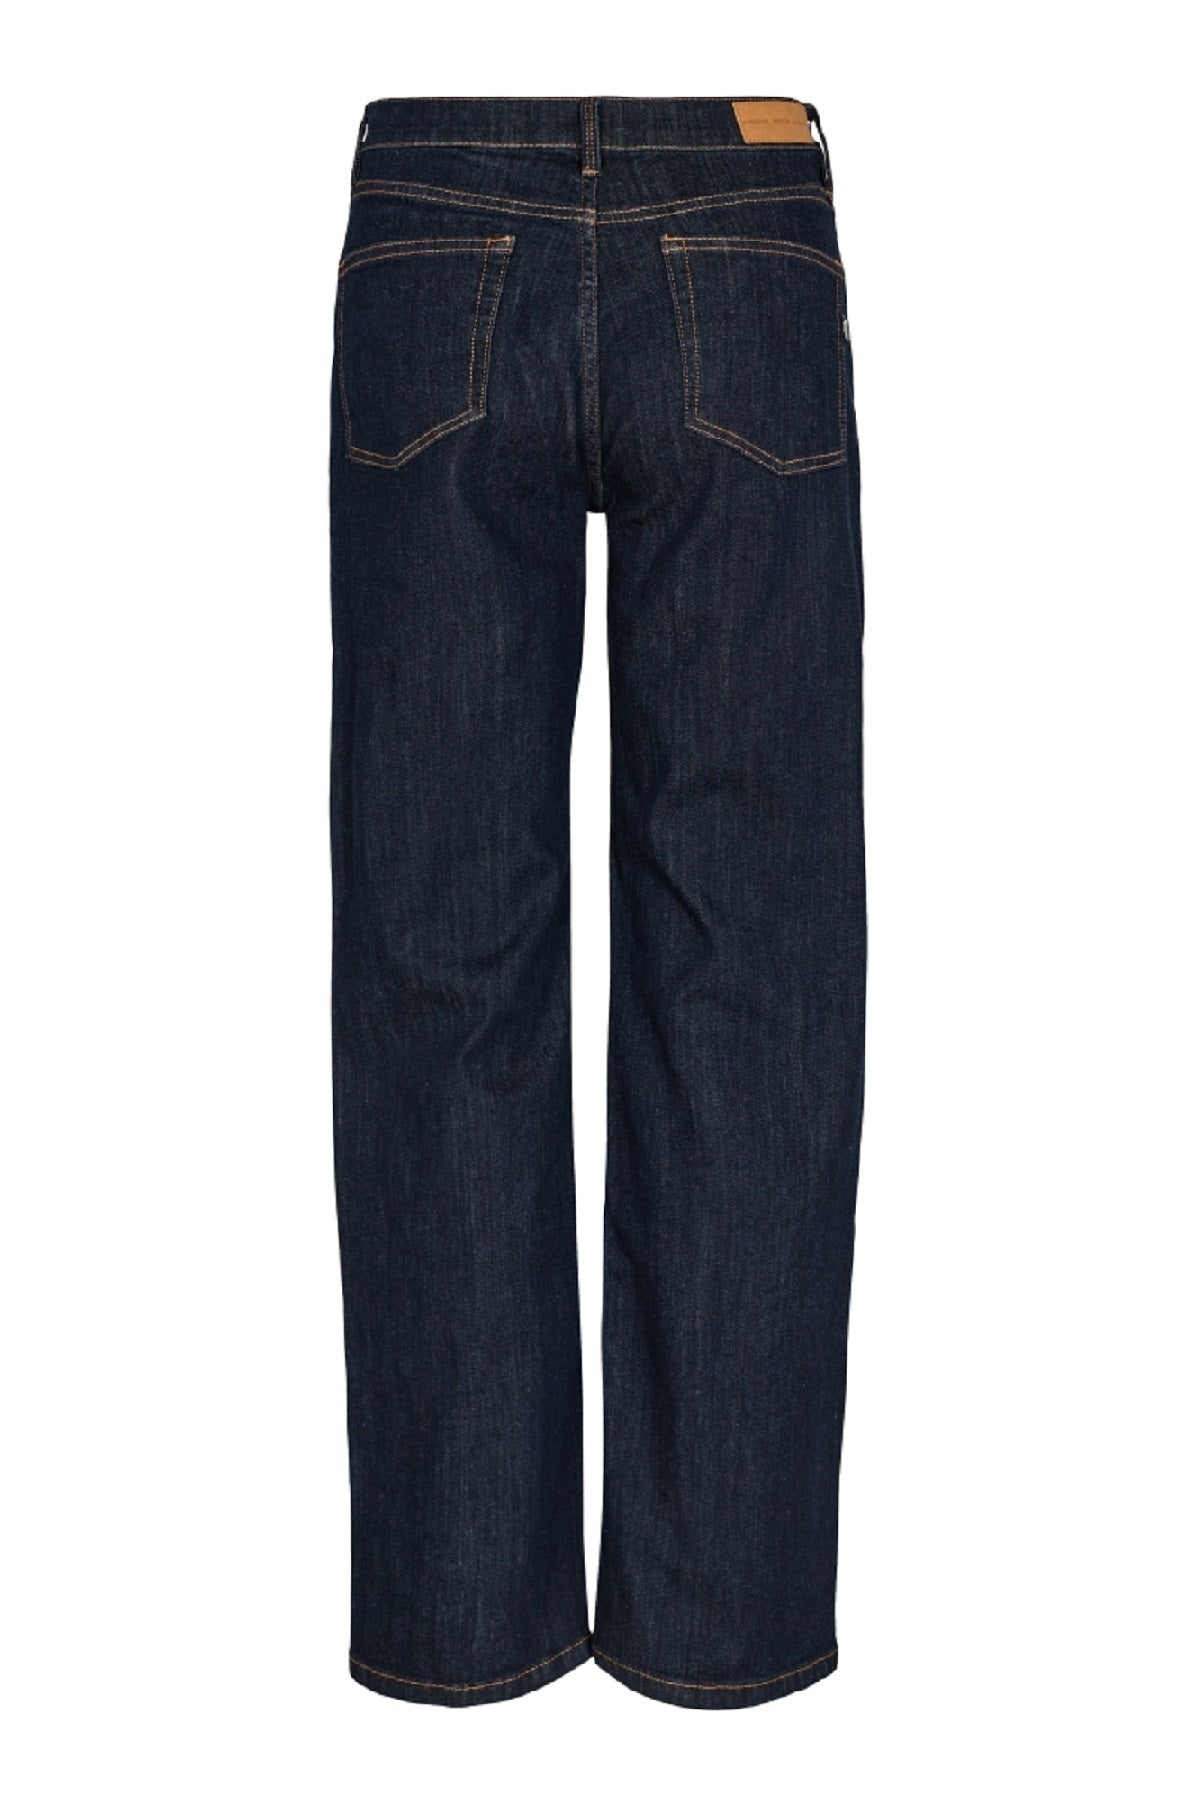 Pieszak Birkin SWAN Jeans Wash Remarkable Rinse, Denim blue